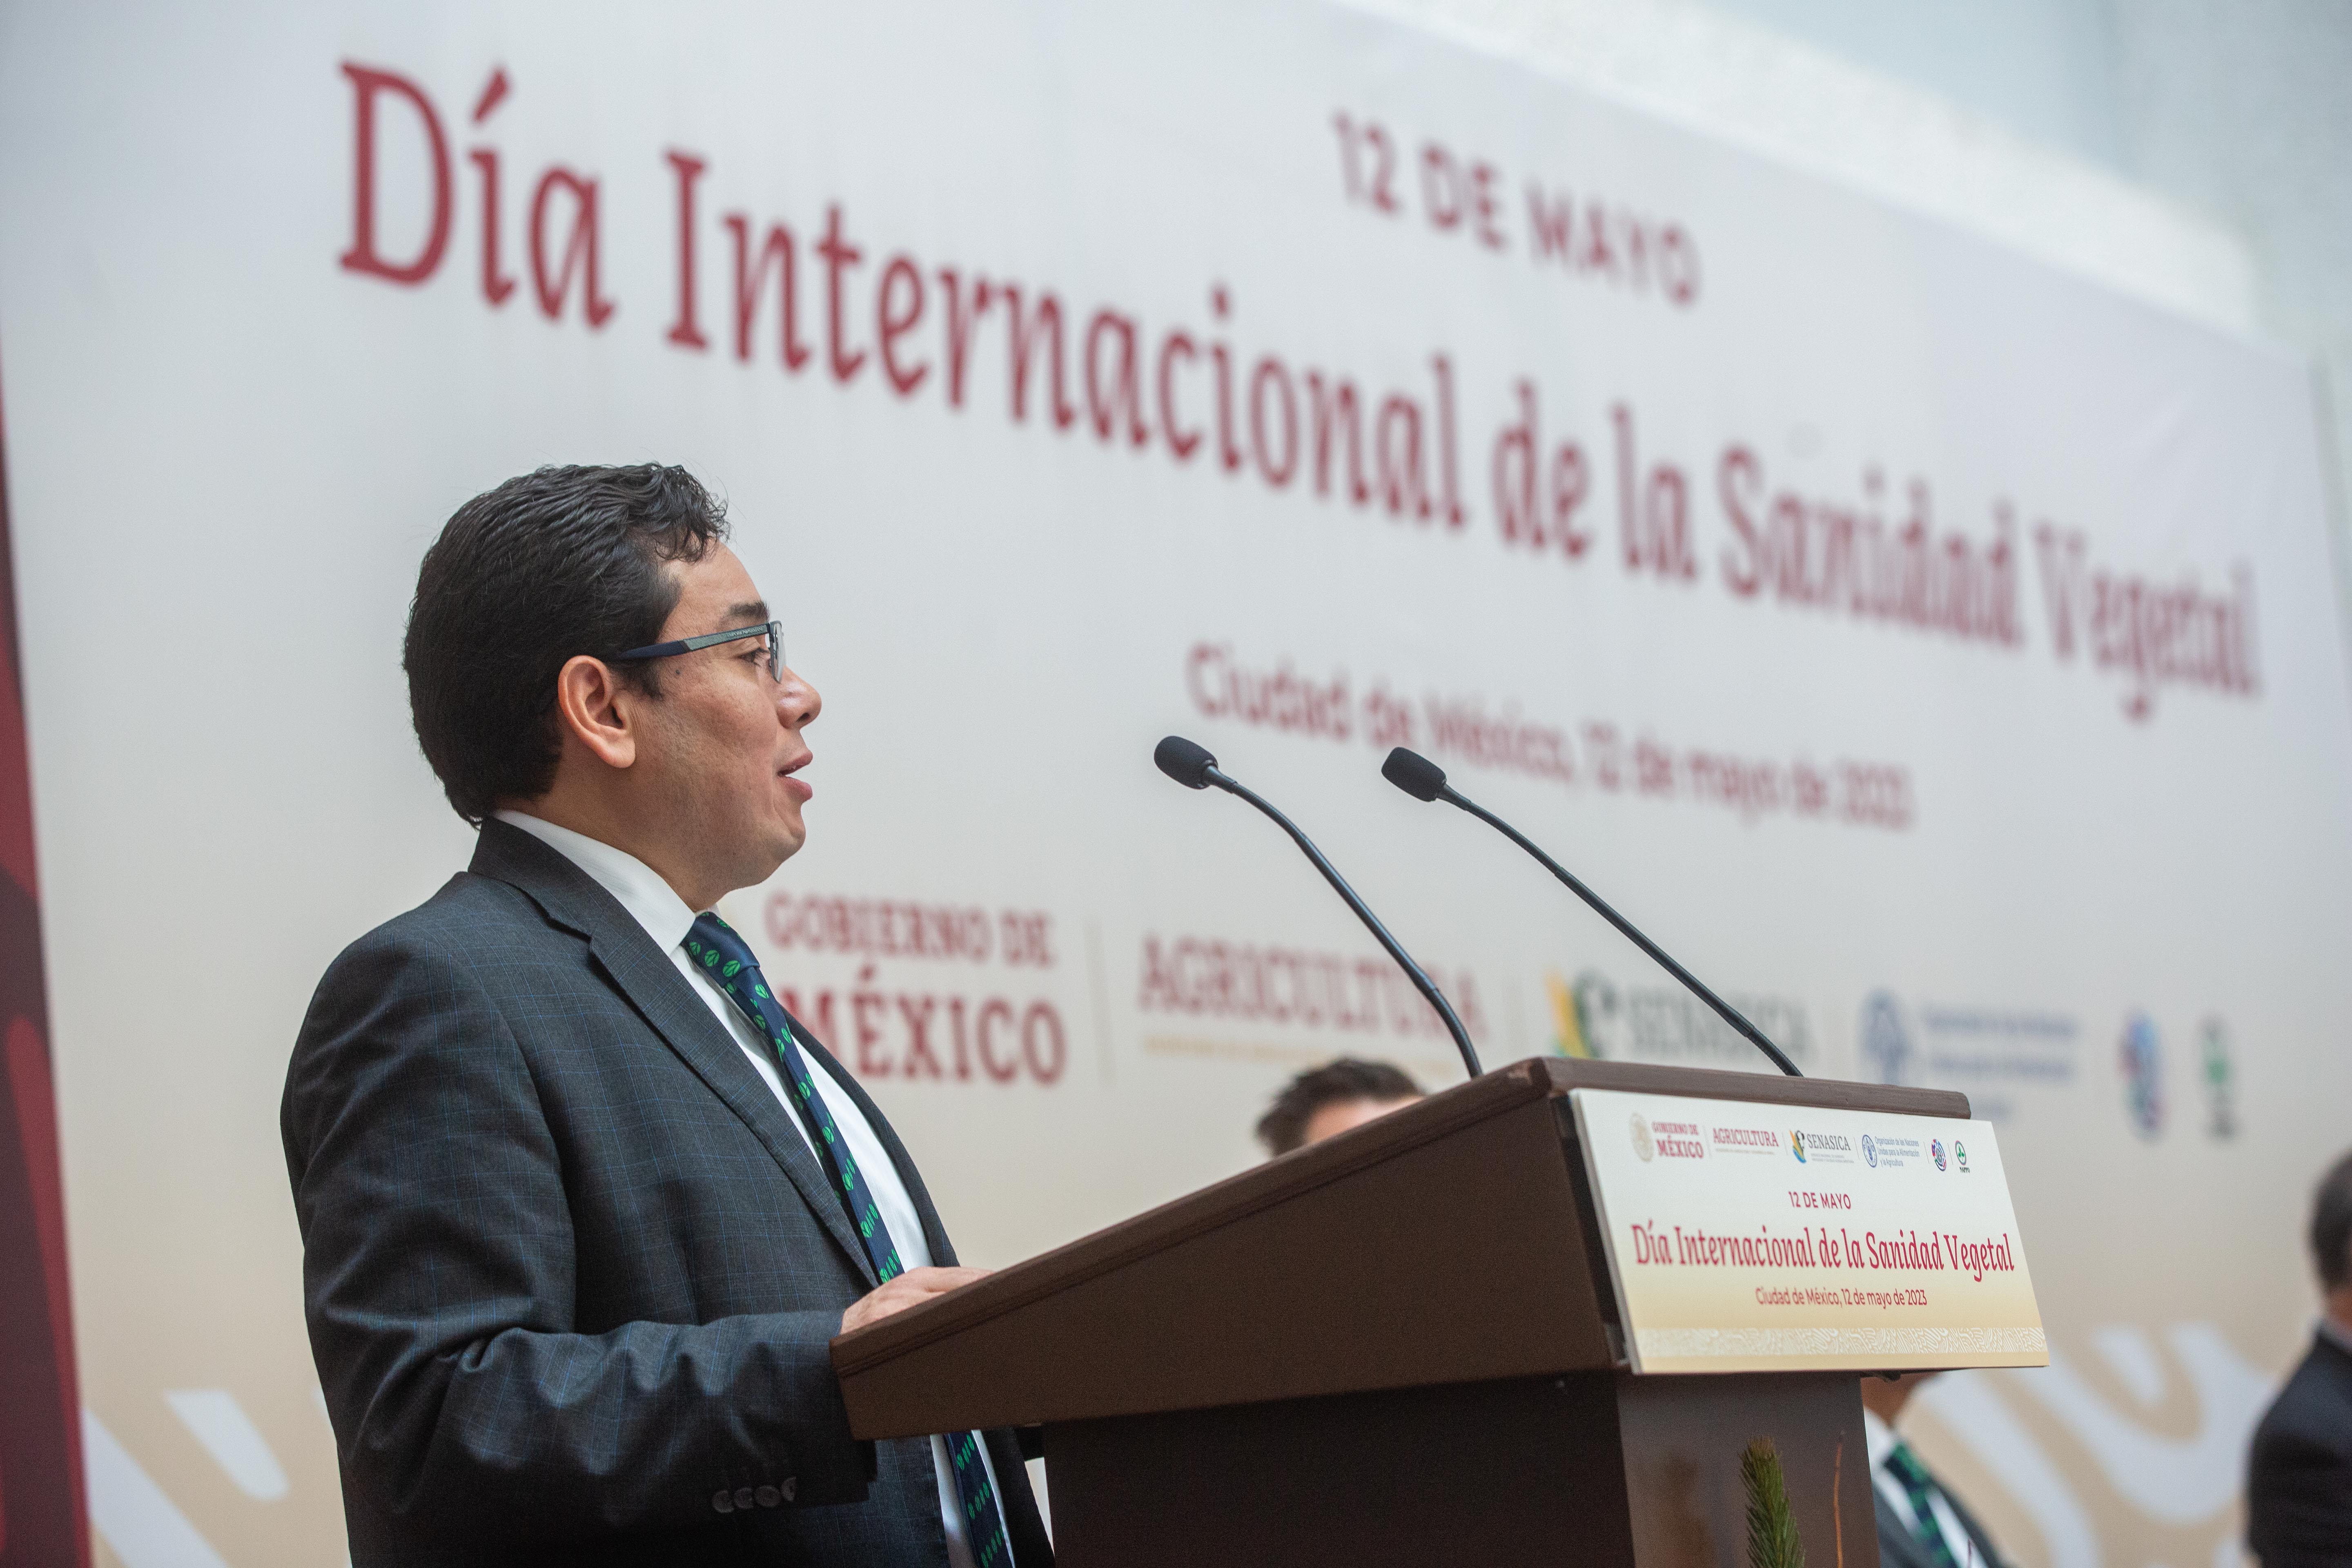 El director en jefe del Servicio Nacional de Sanidad, Inocuidad y Calidad Agroalimentaria (Senasica), Javier Calderón Elizalde, hablando en el pódium durante la celebración del Día Internacional de la Sanidad Vegetal.